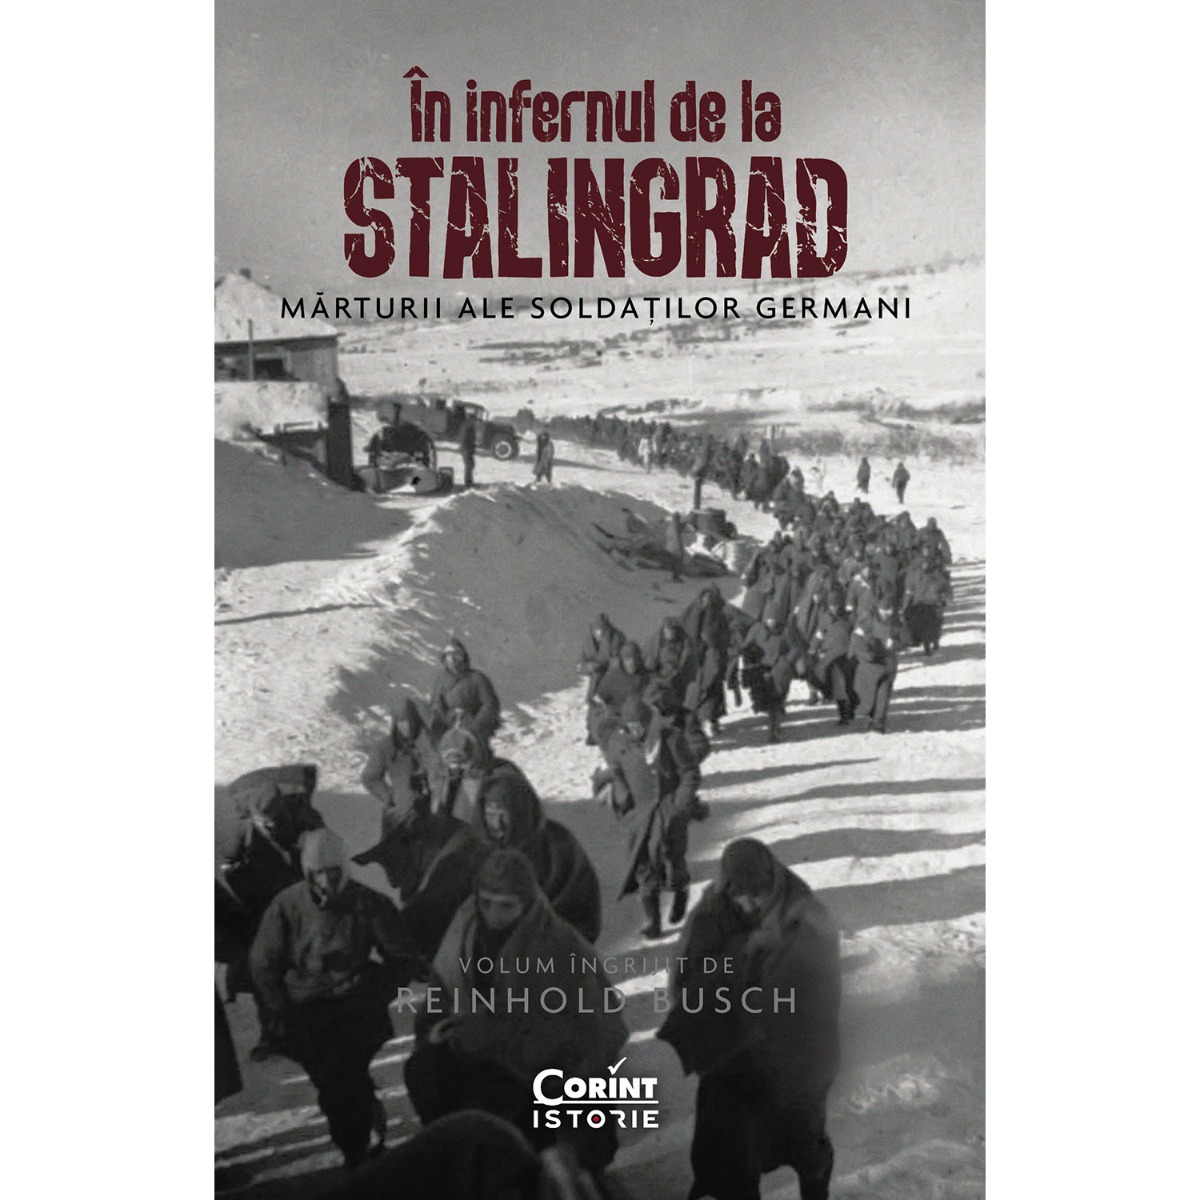 In infernul de la Stalingrad, Marturii ale soldatilor germani, Reinhold Busch